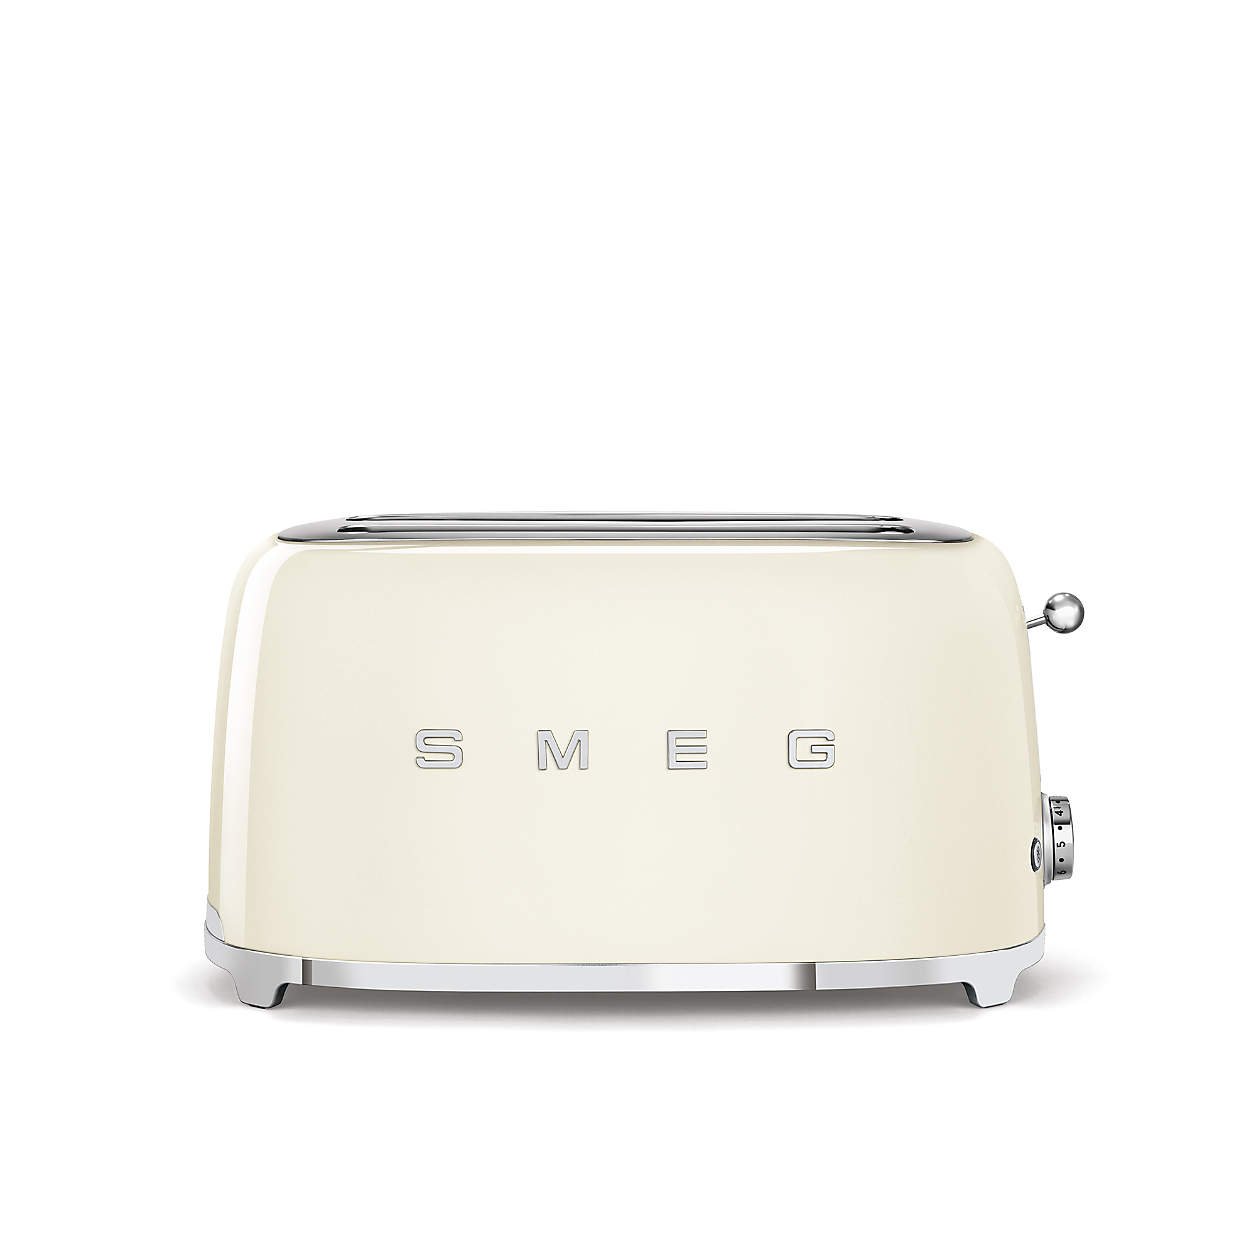 Smeg Cream Toaster